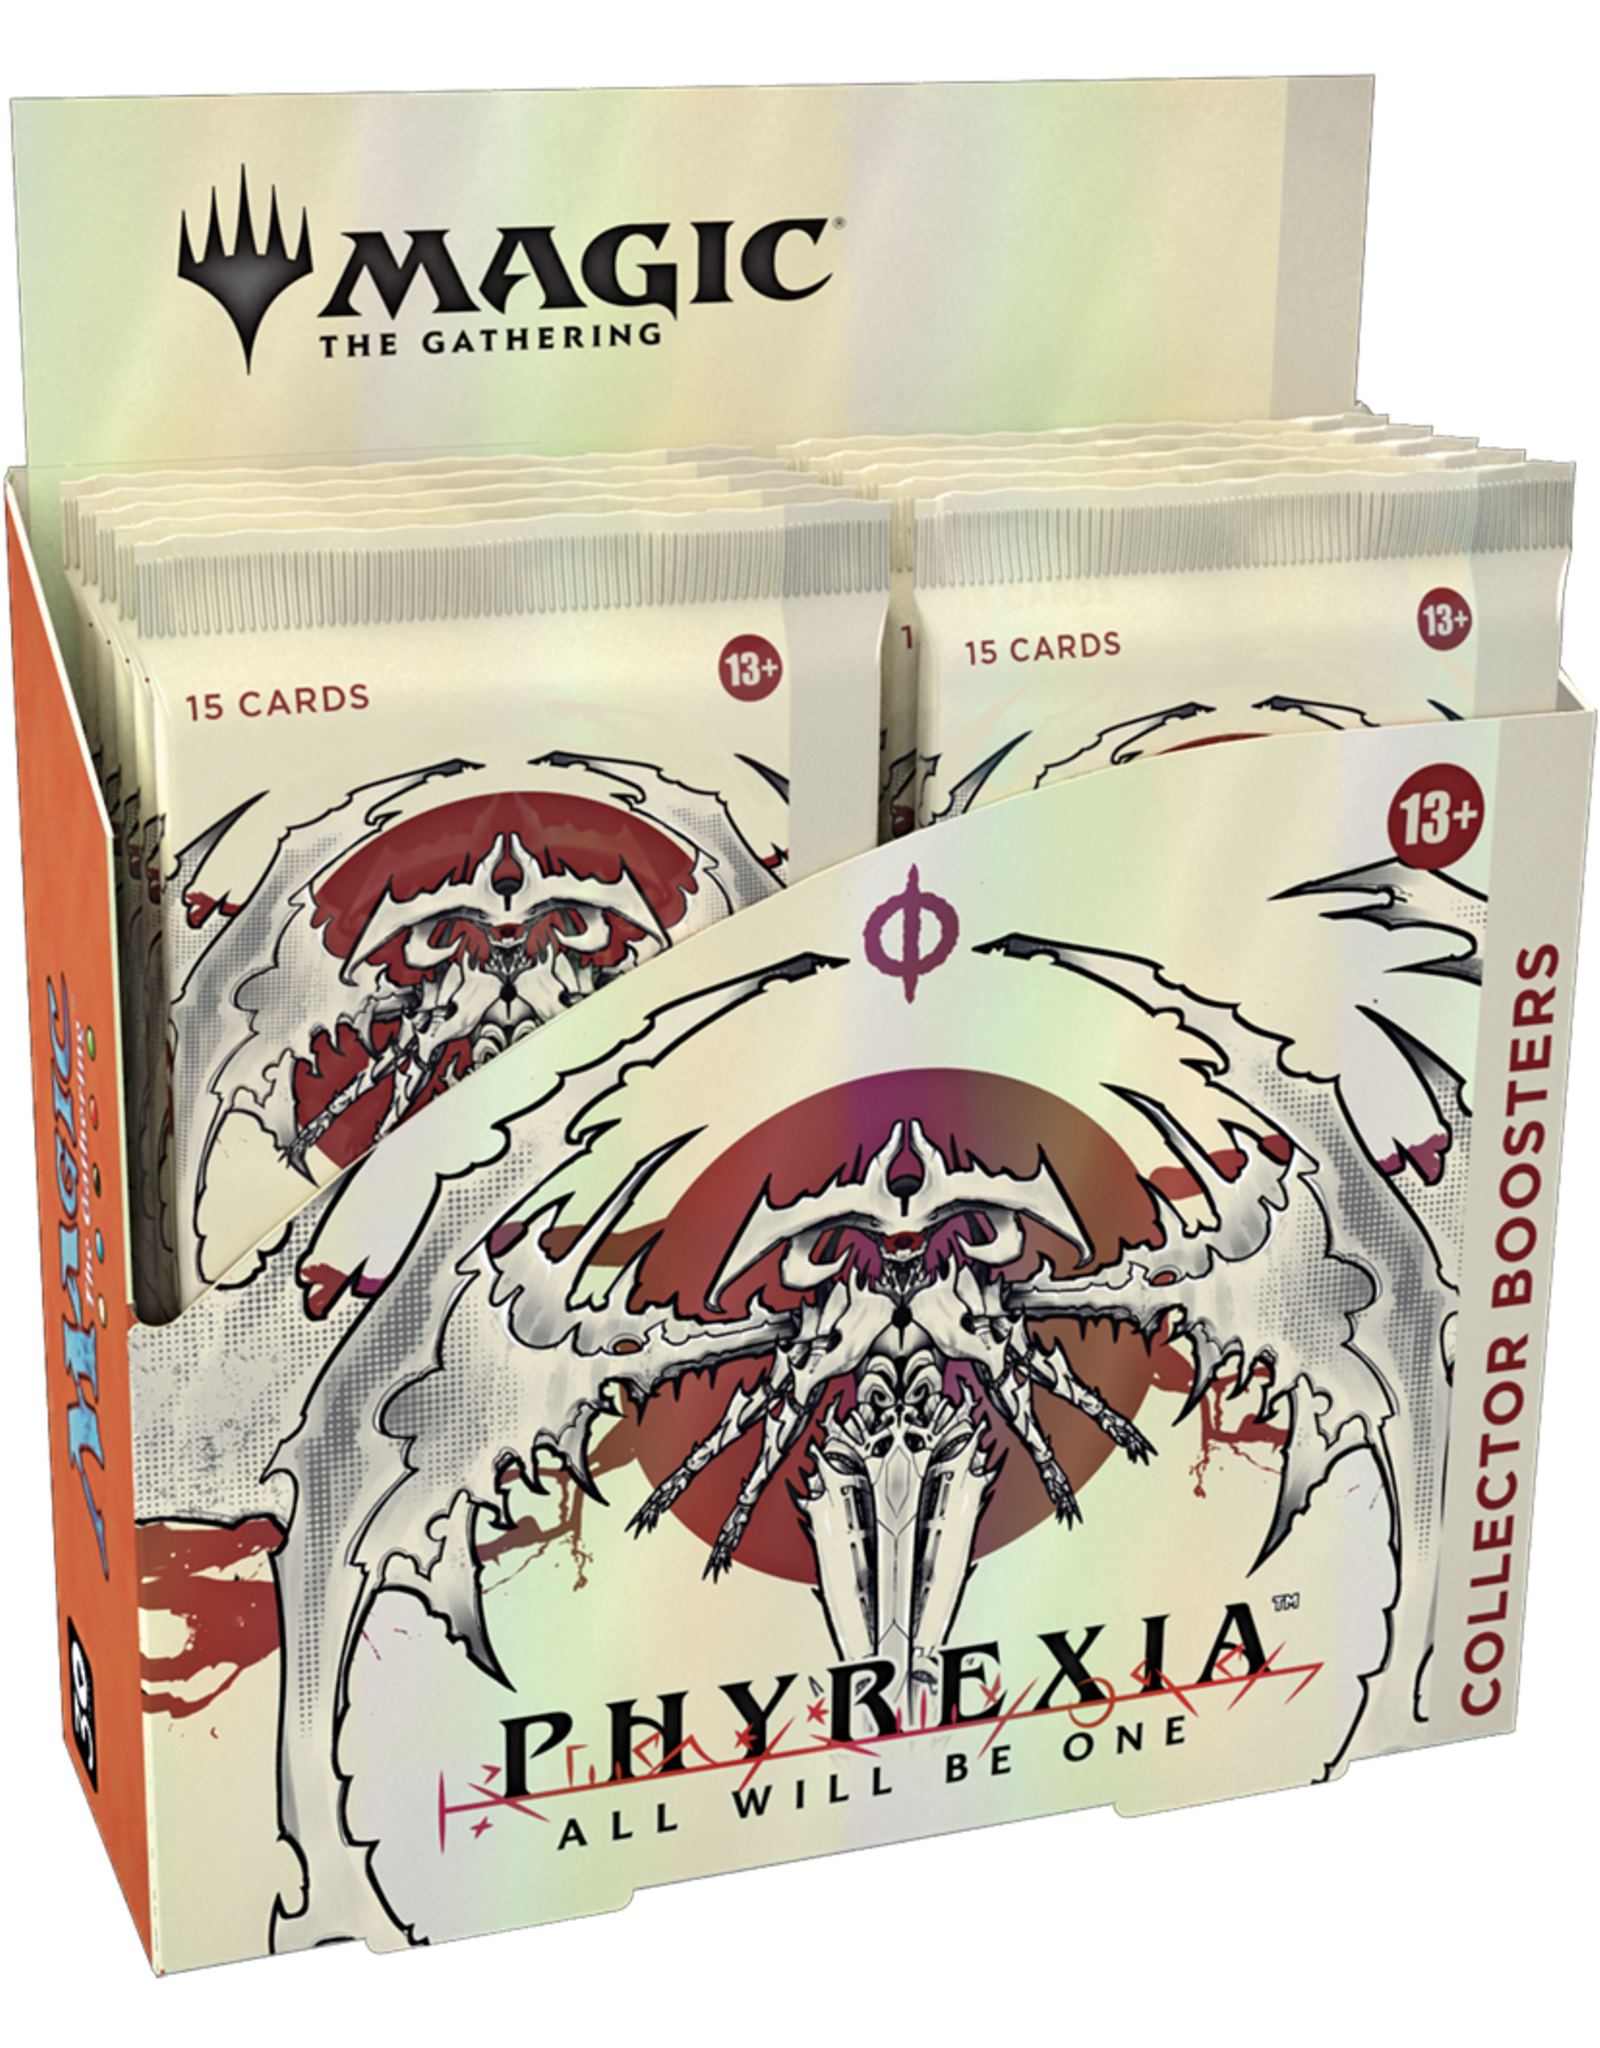 Wizards of the Coast MTG Phyrexia AWBO Collector Booster Box